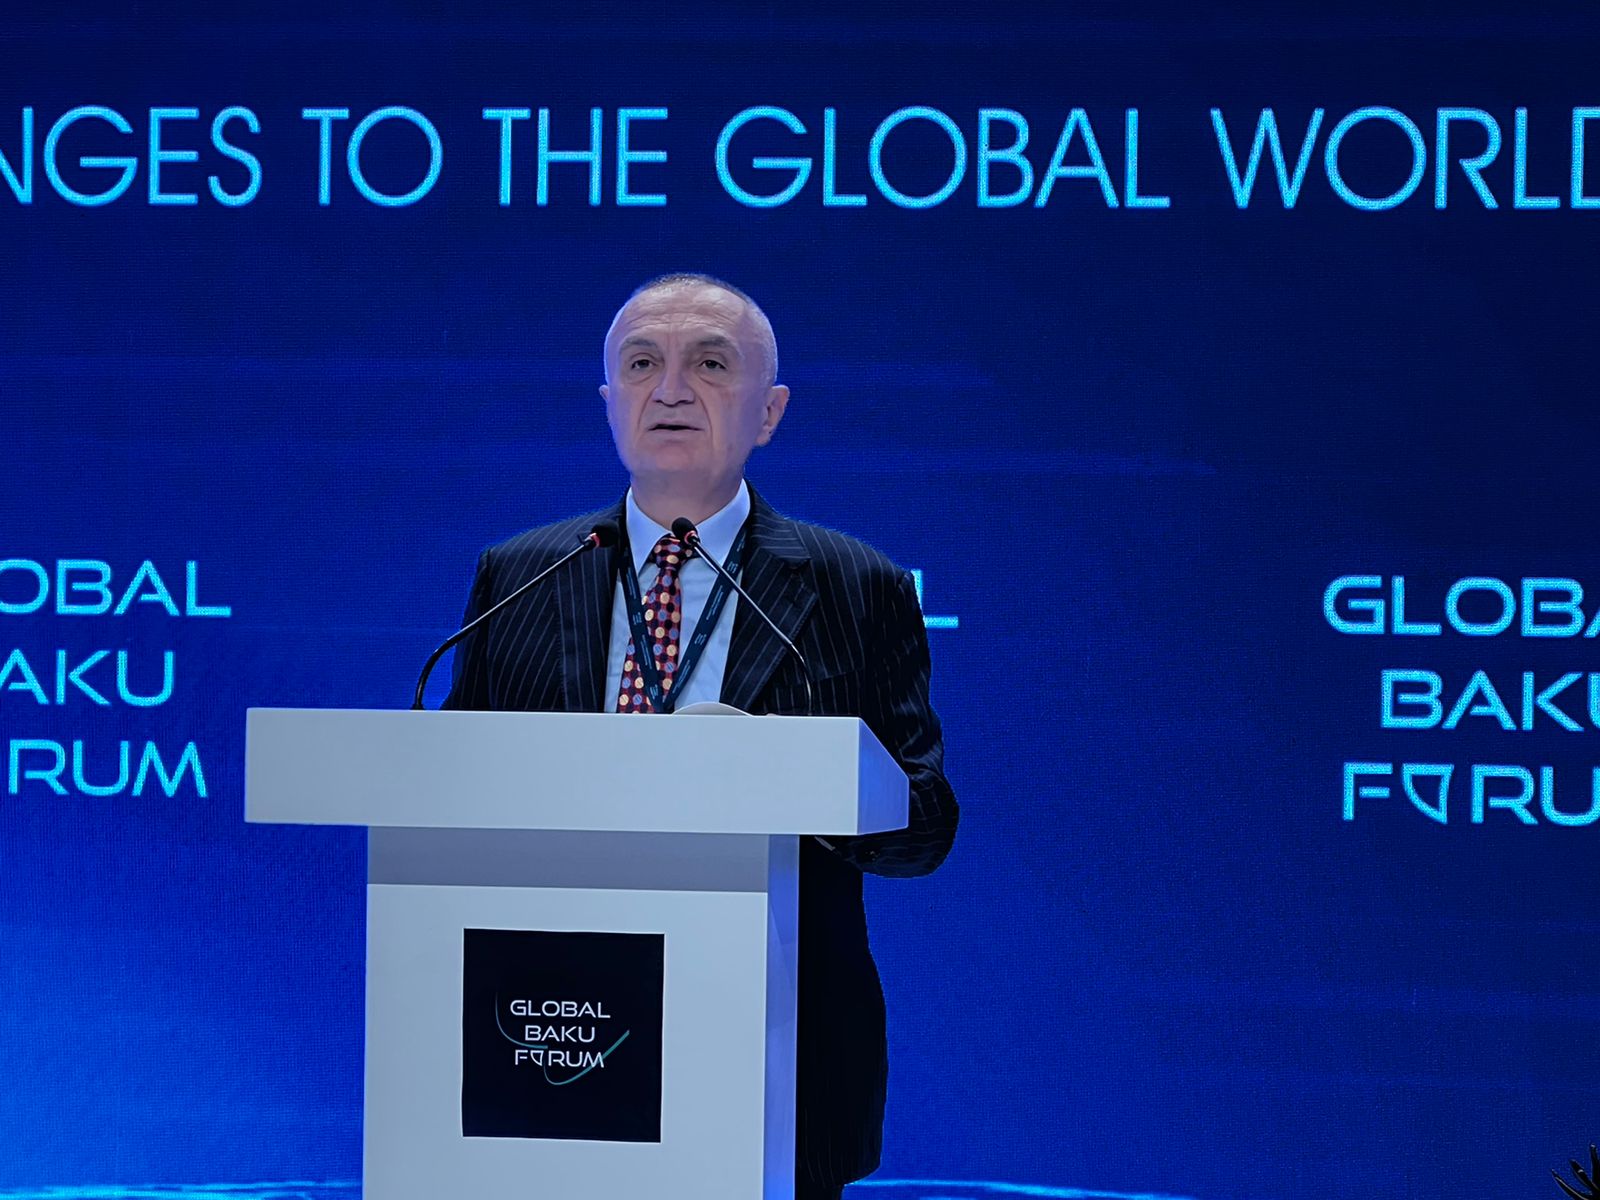 Presidenti Meta në sesionin përmbyllës të Forumit IX Global të Bakusë me temë “Sfidat ndaj rendit botëror”